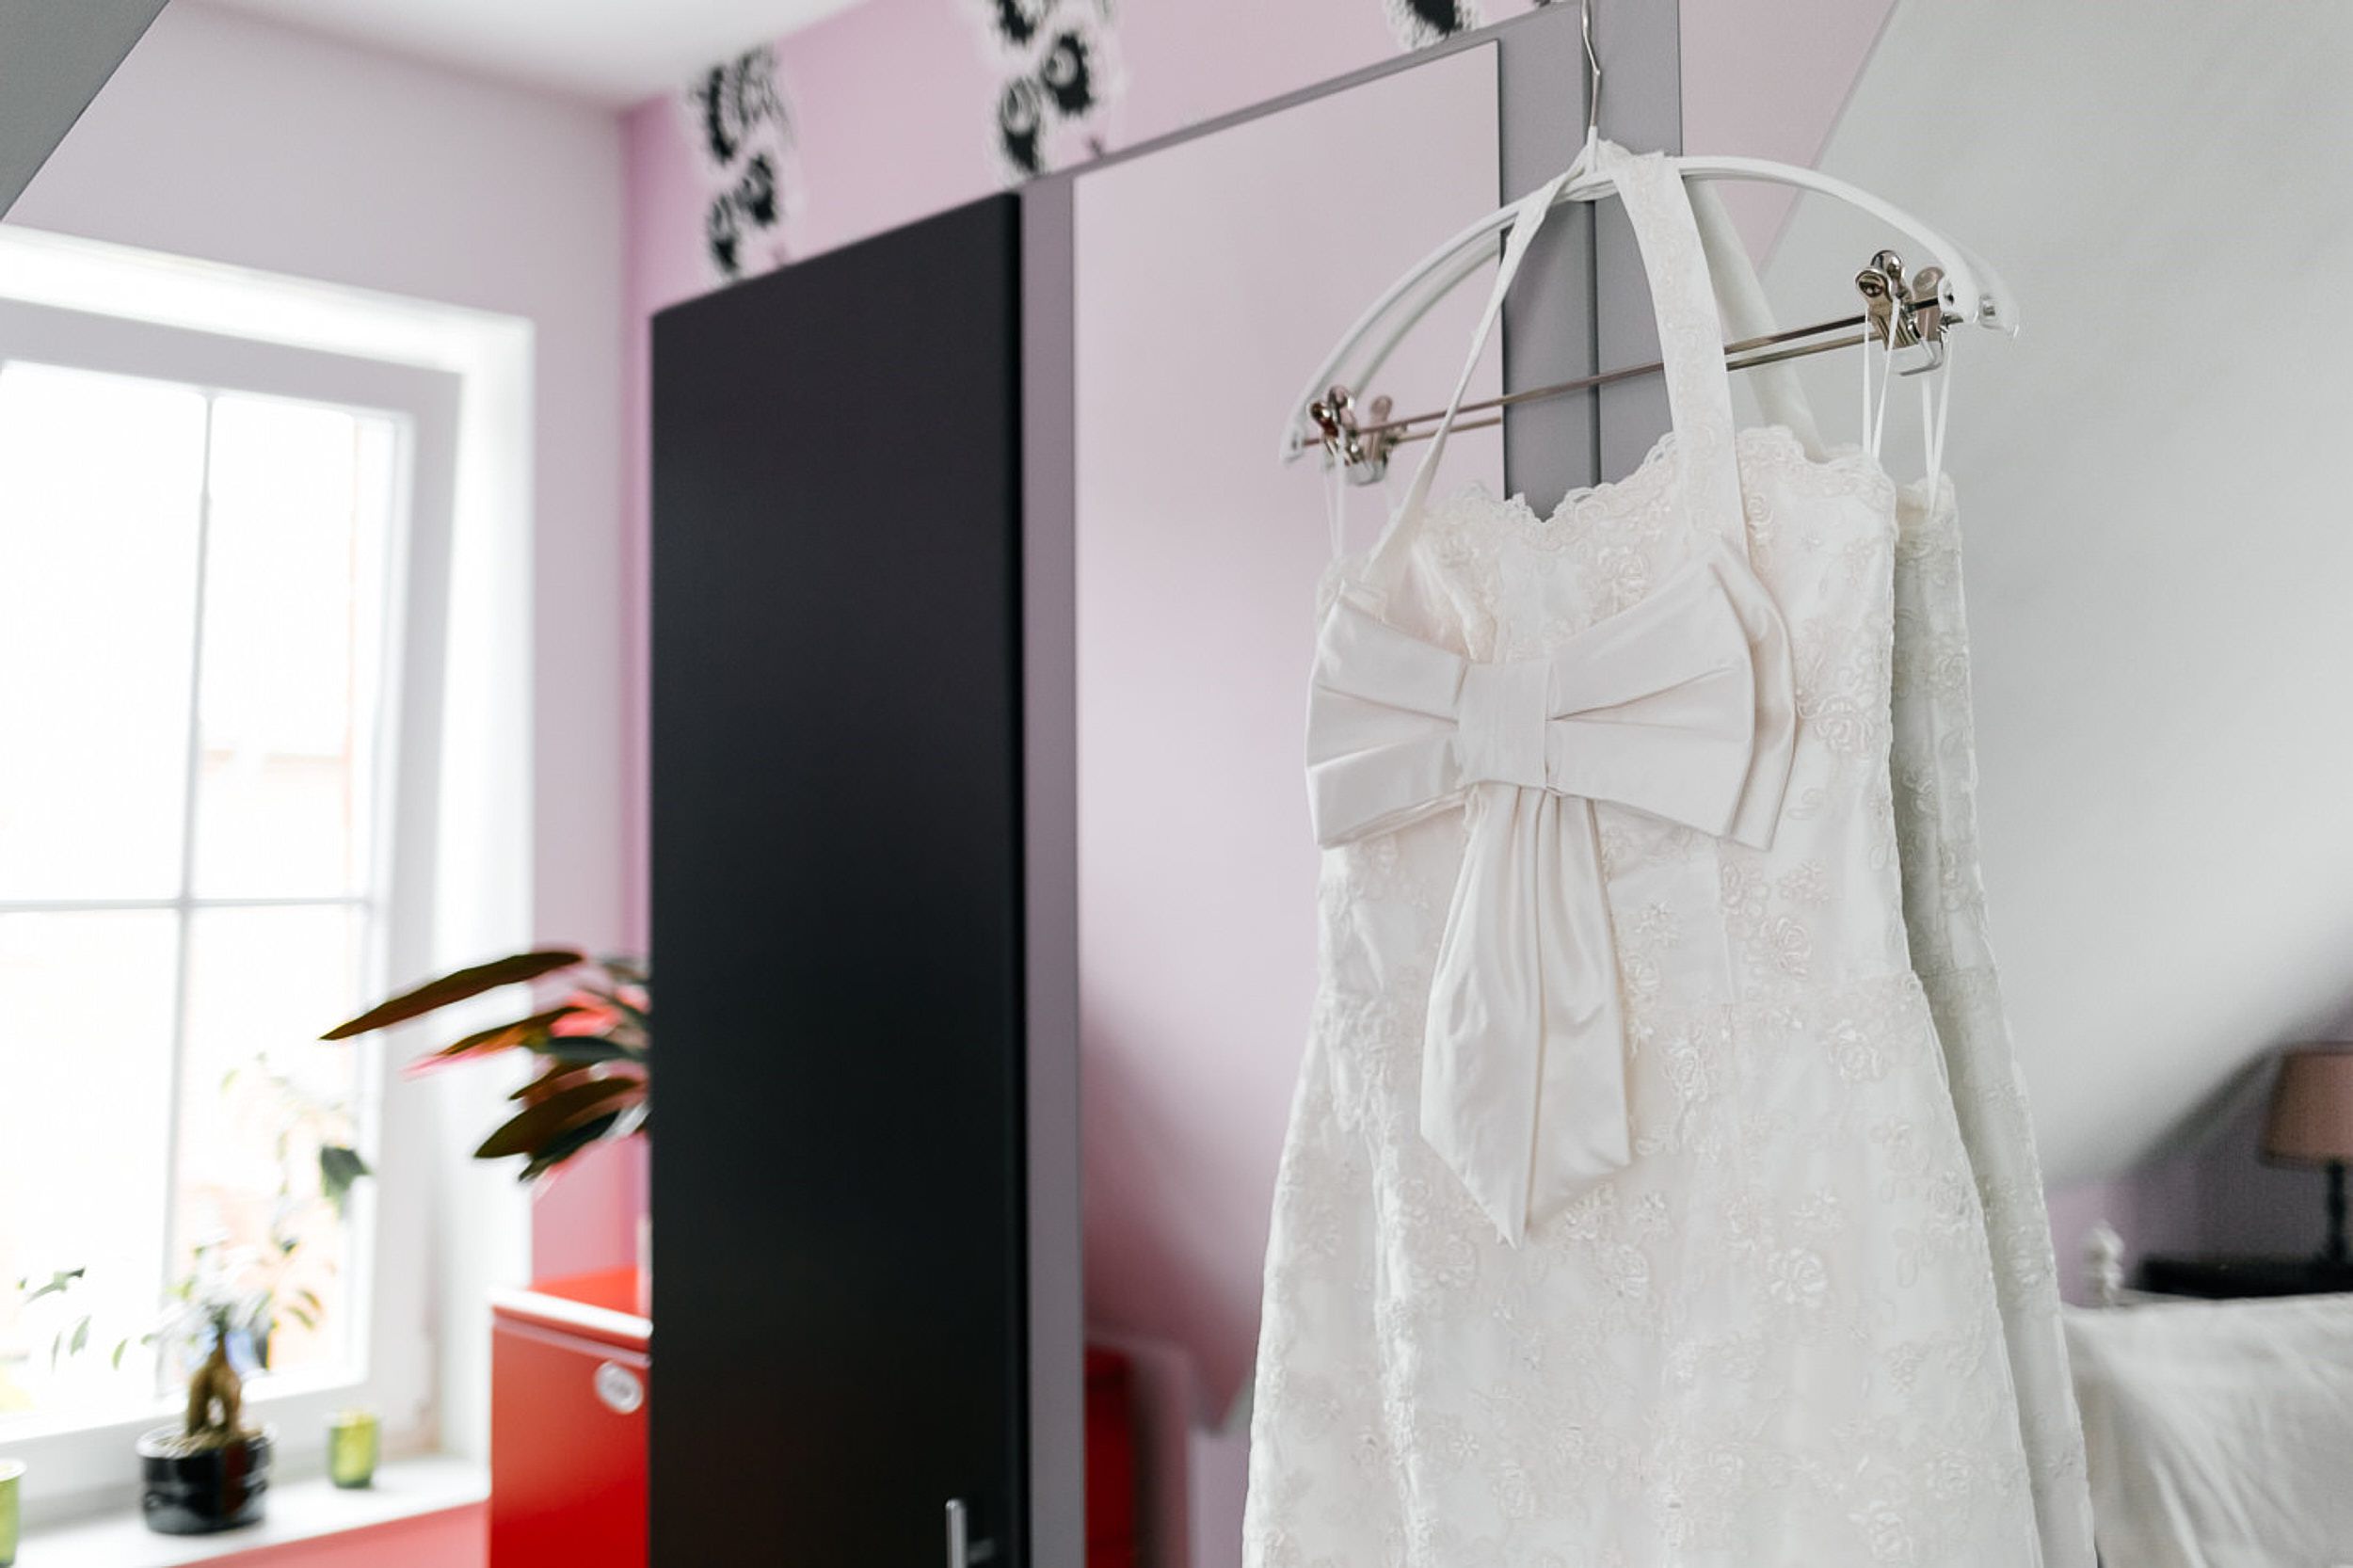 Brautkleid hängt an dem Schrank.